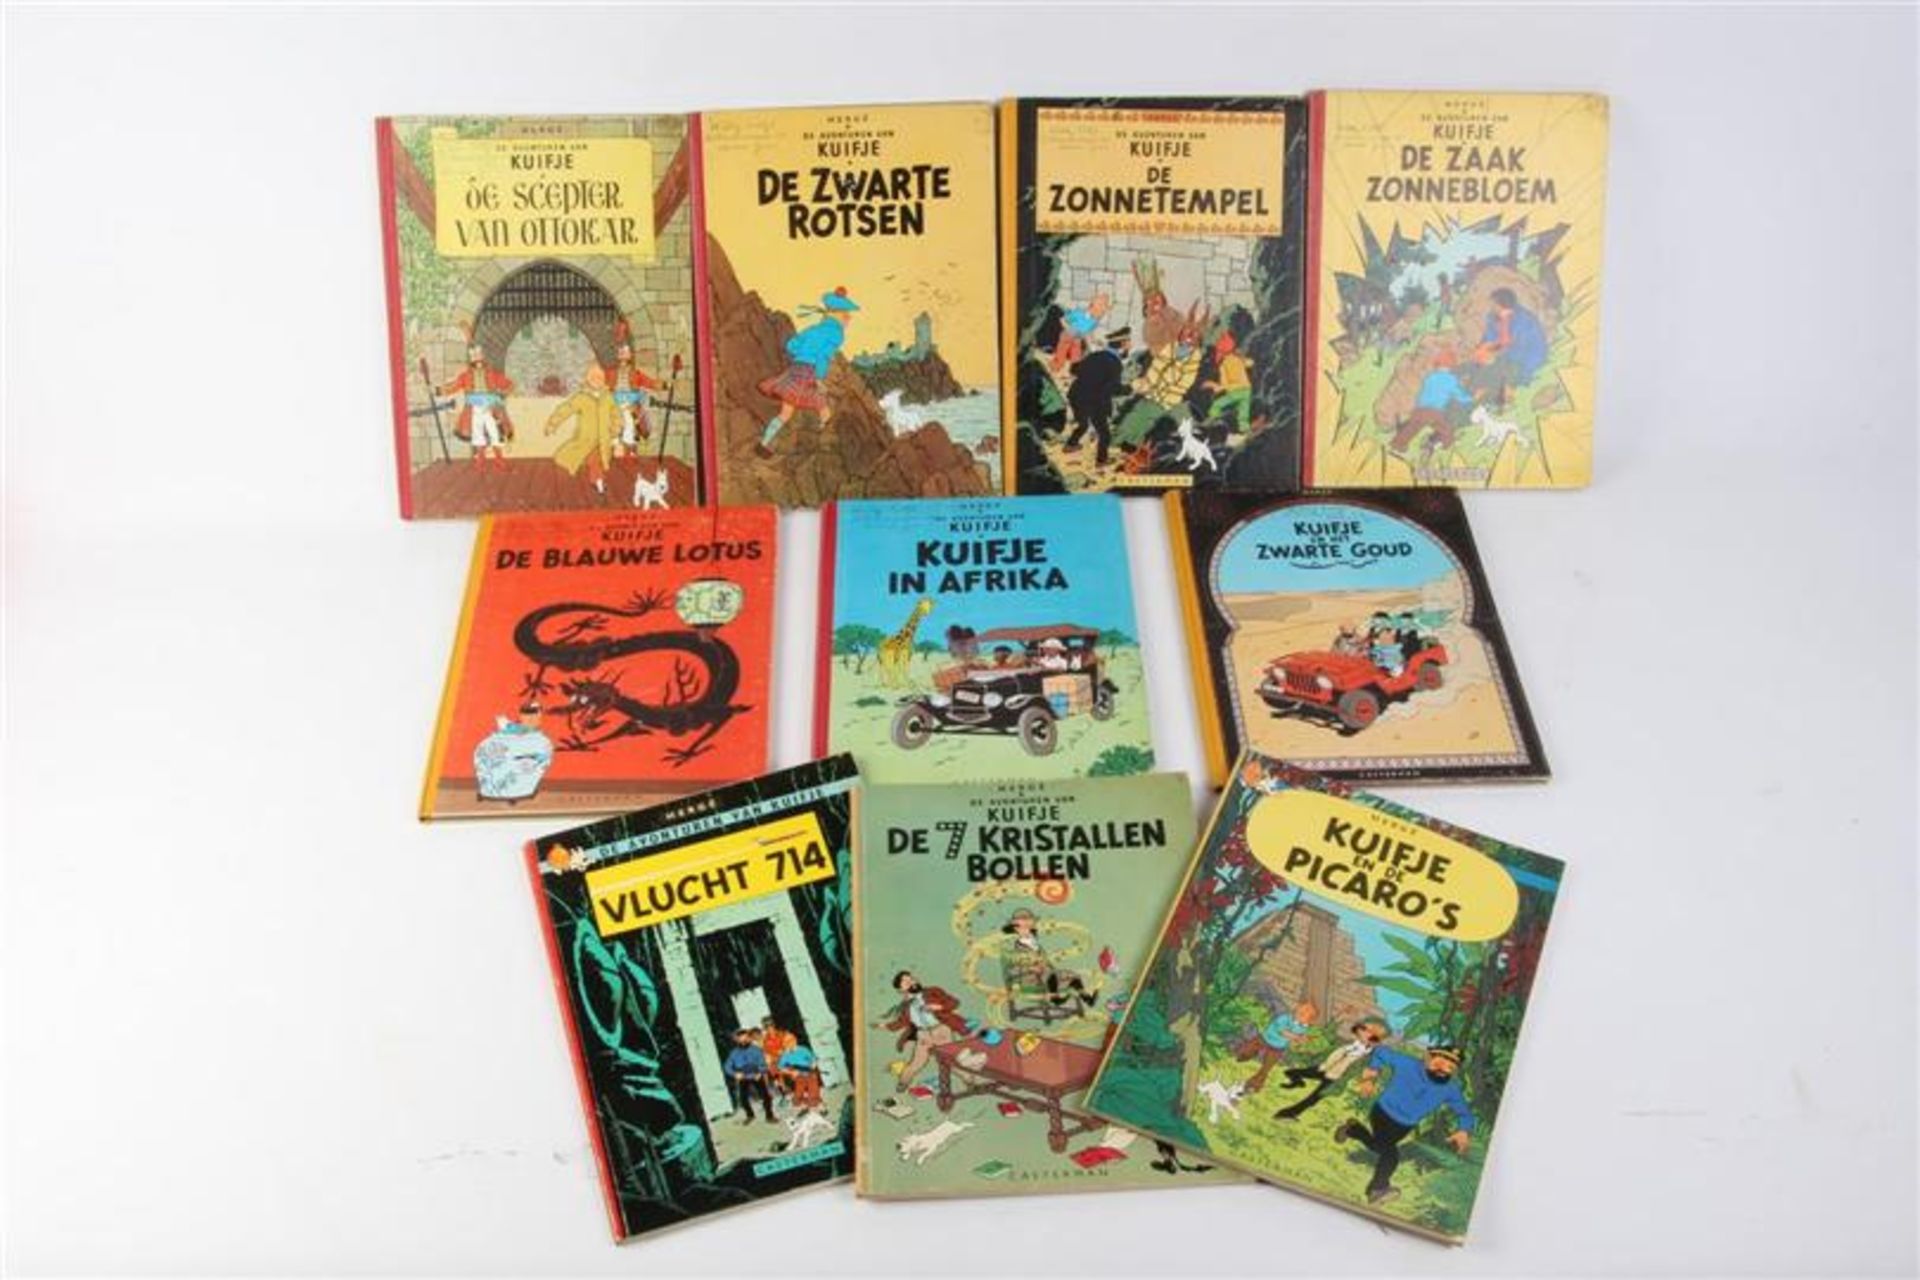 De avonturen van Kuifje, Hergé, uitgeverij Casterman, 7 hardcovers en drie softcovers.